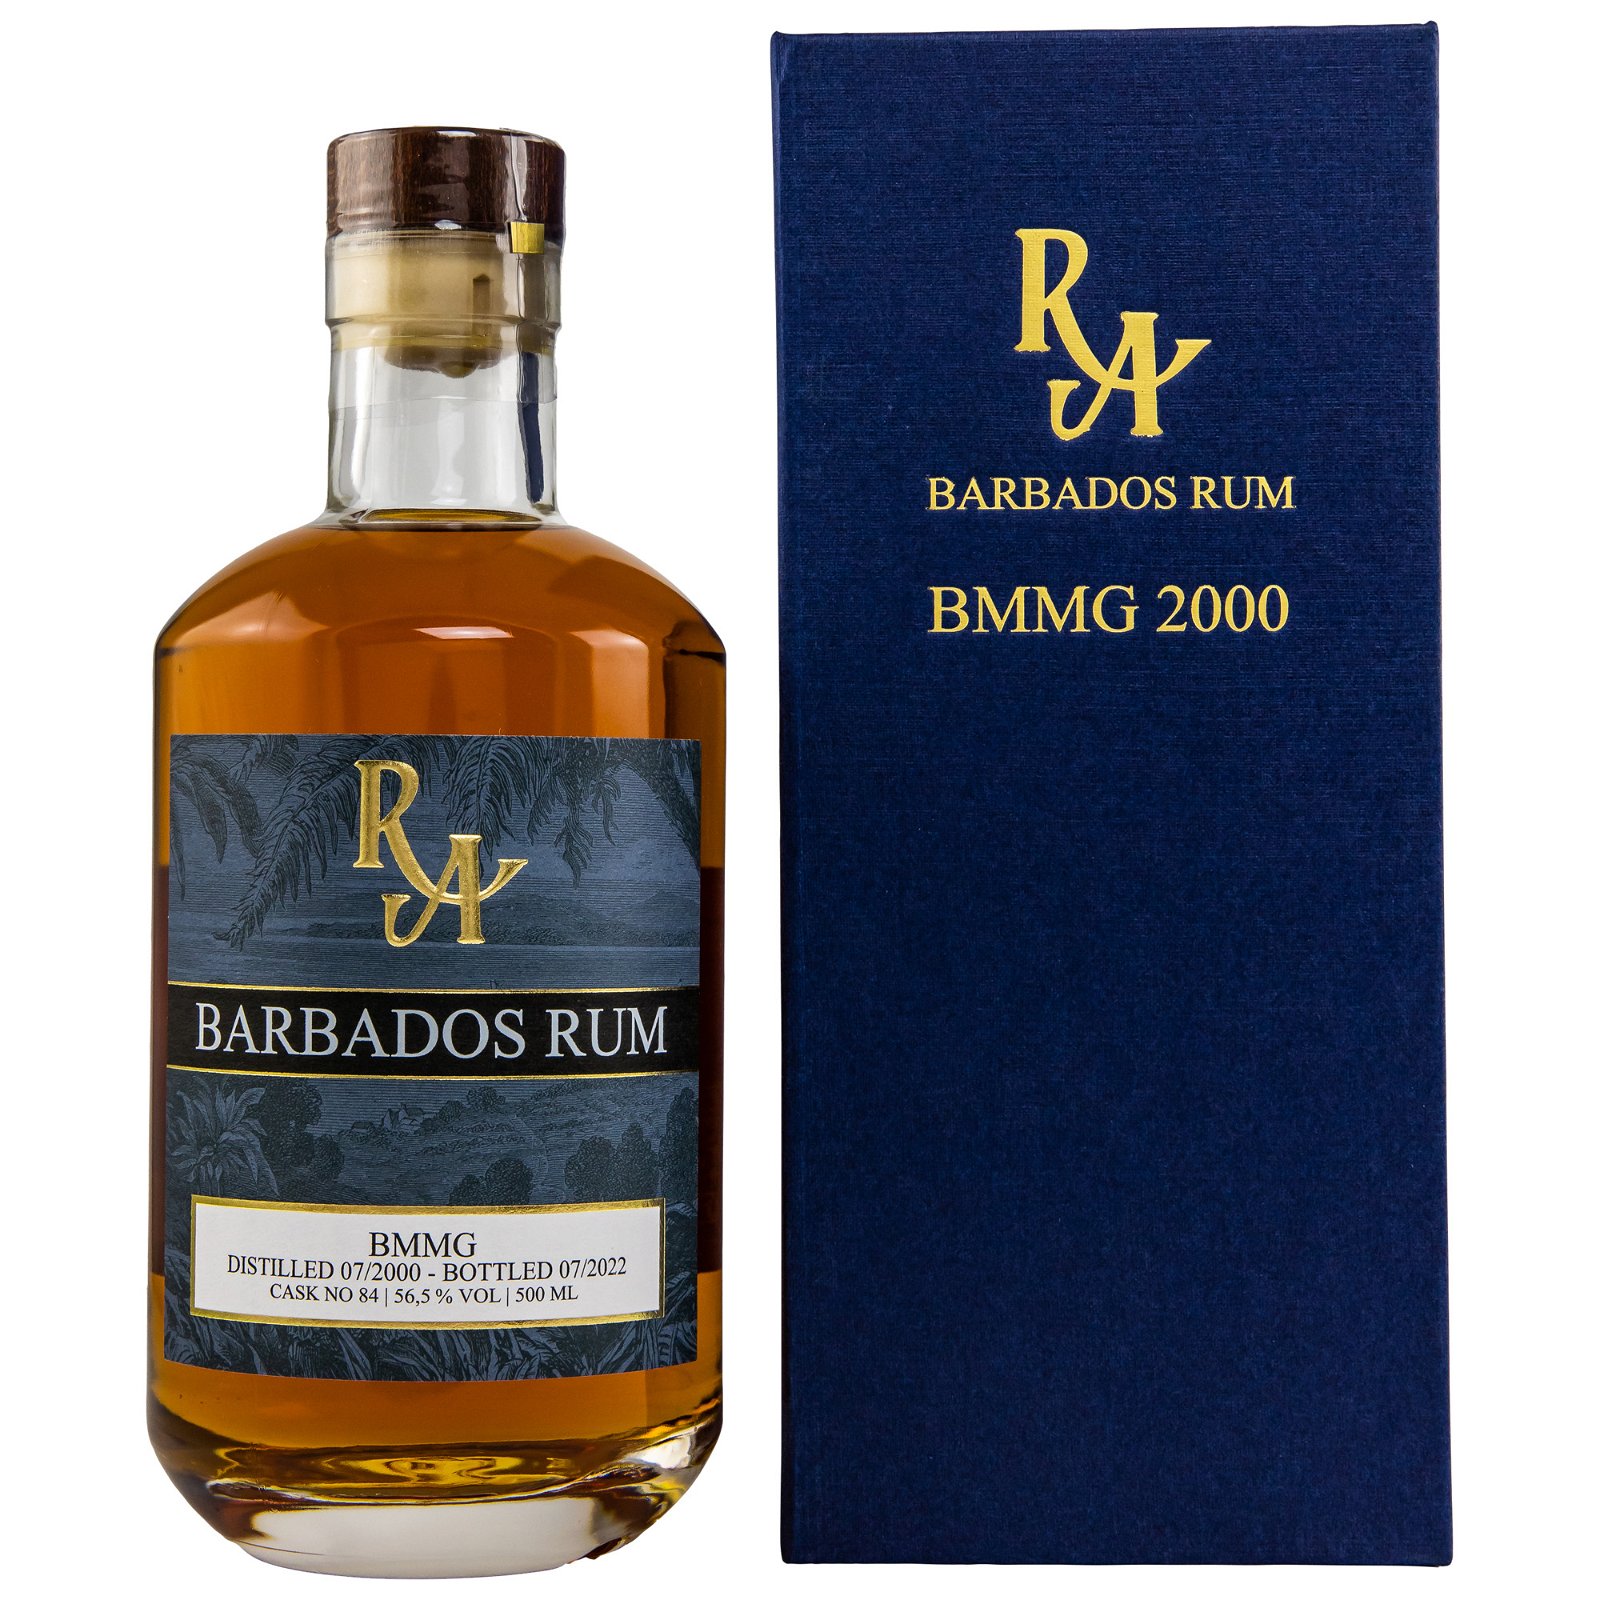 Barbados Rum 2000/2022 BMMG Cask No. 84 (Rum Artesanal)